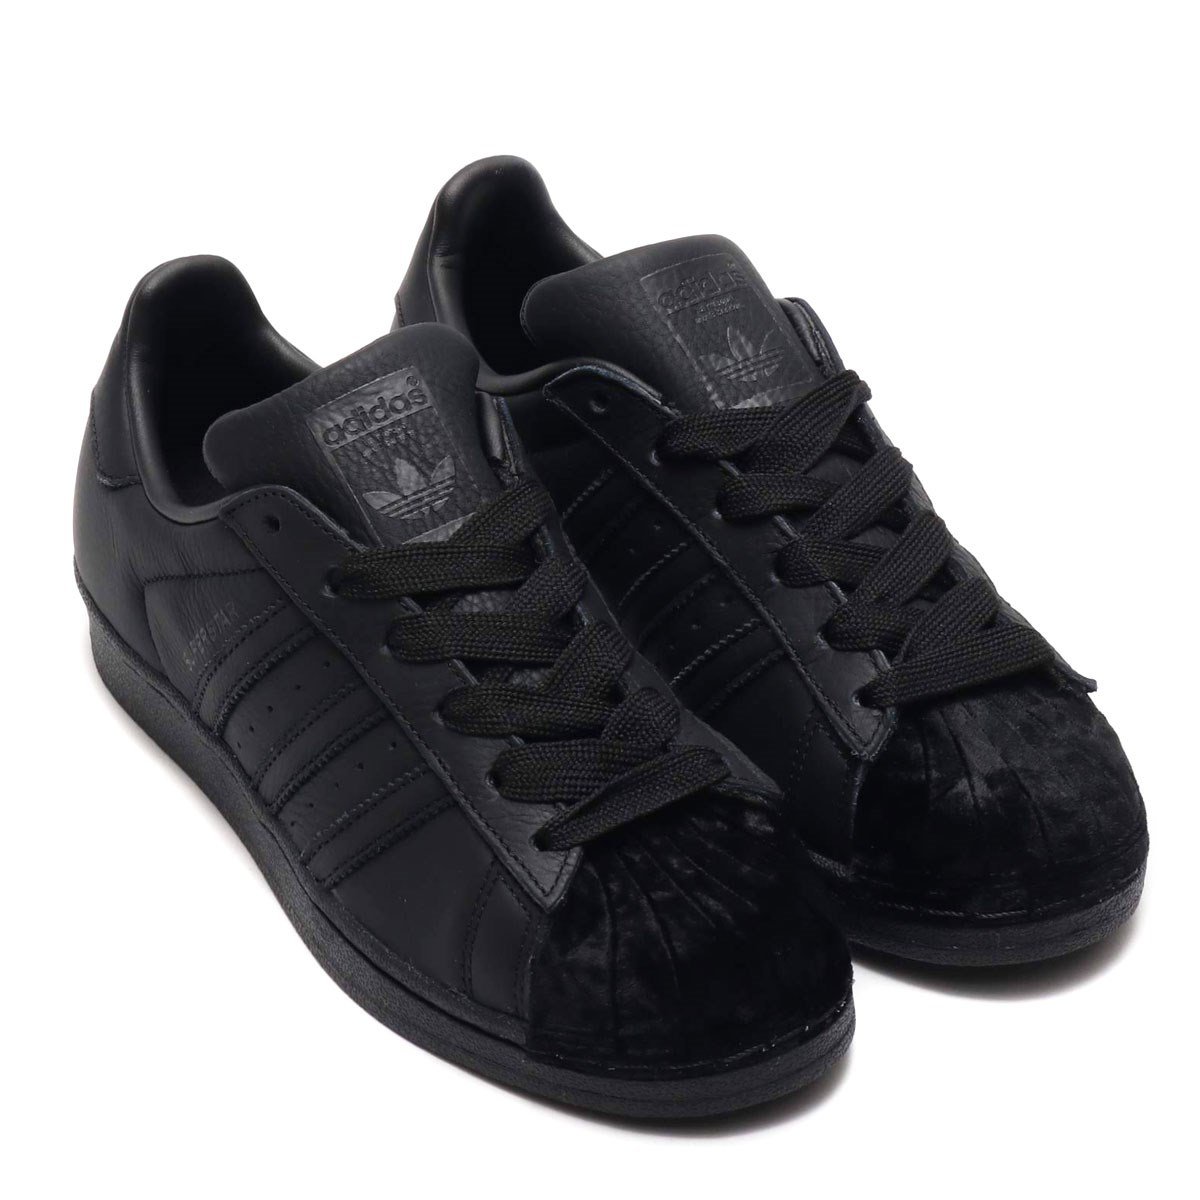 Adidas Superstar Sneakers Bayan Siyah Spor Ayakkabı CG6011